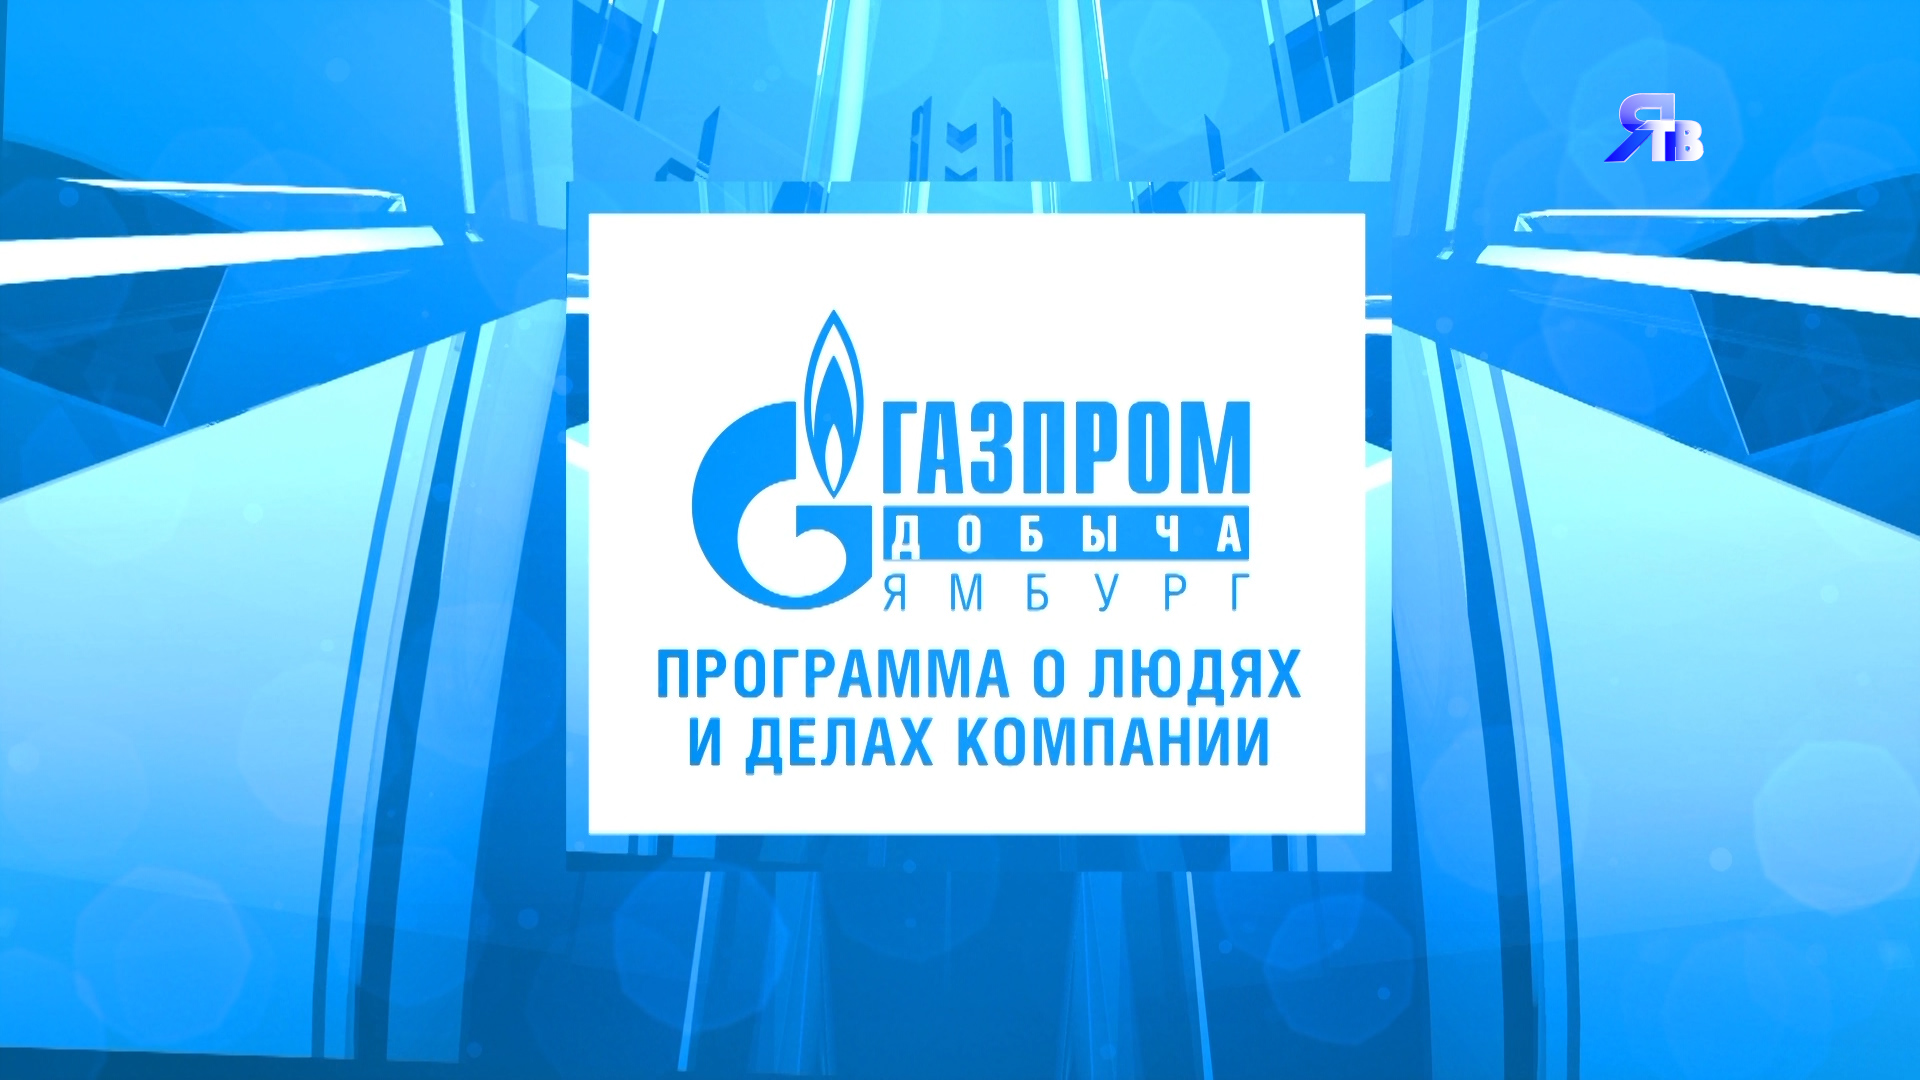 19 сентября / Программа о людях и делах компании ООО "Газпром добыча Ямбург"